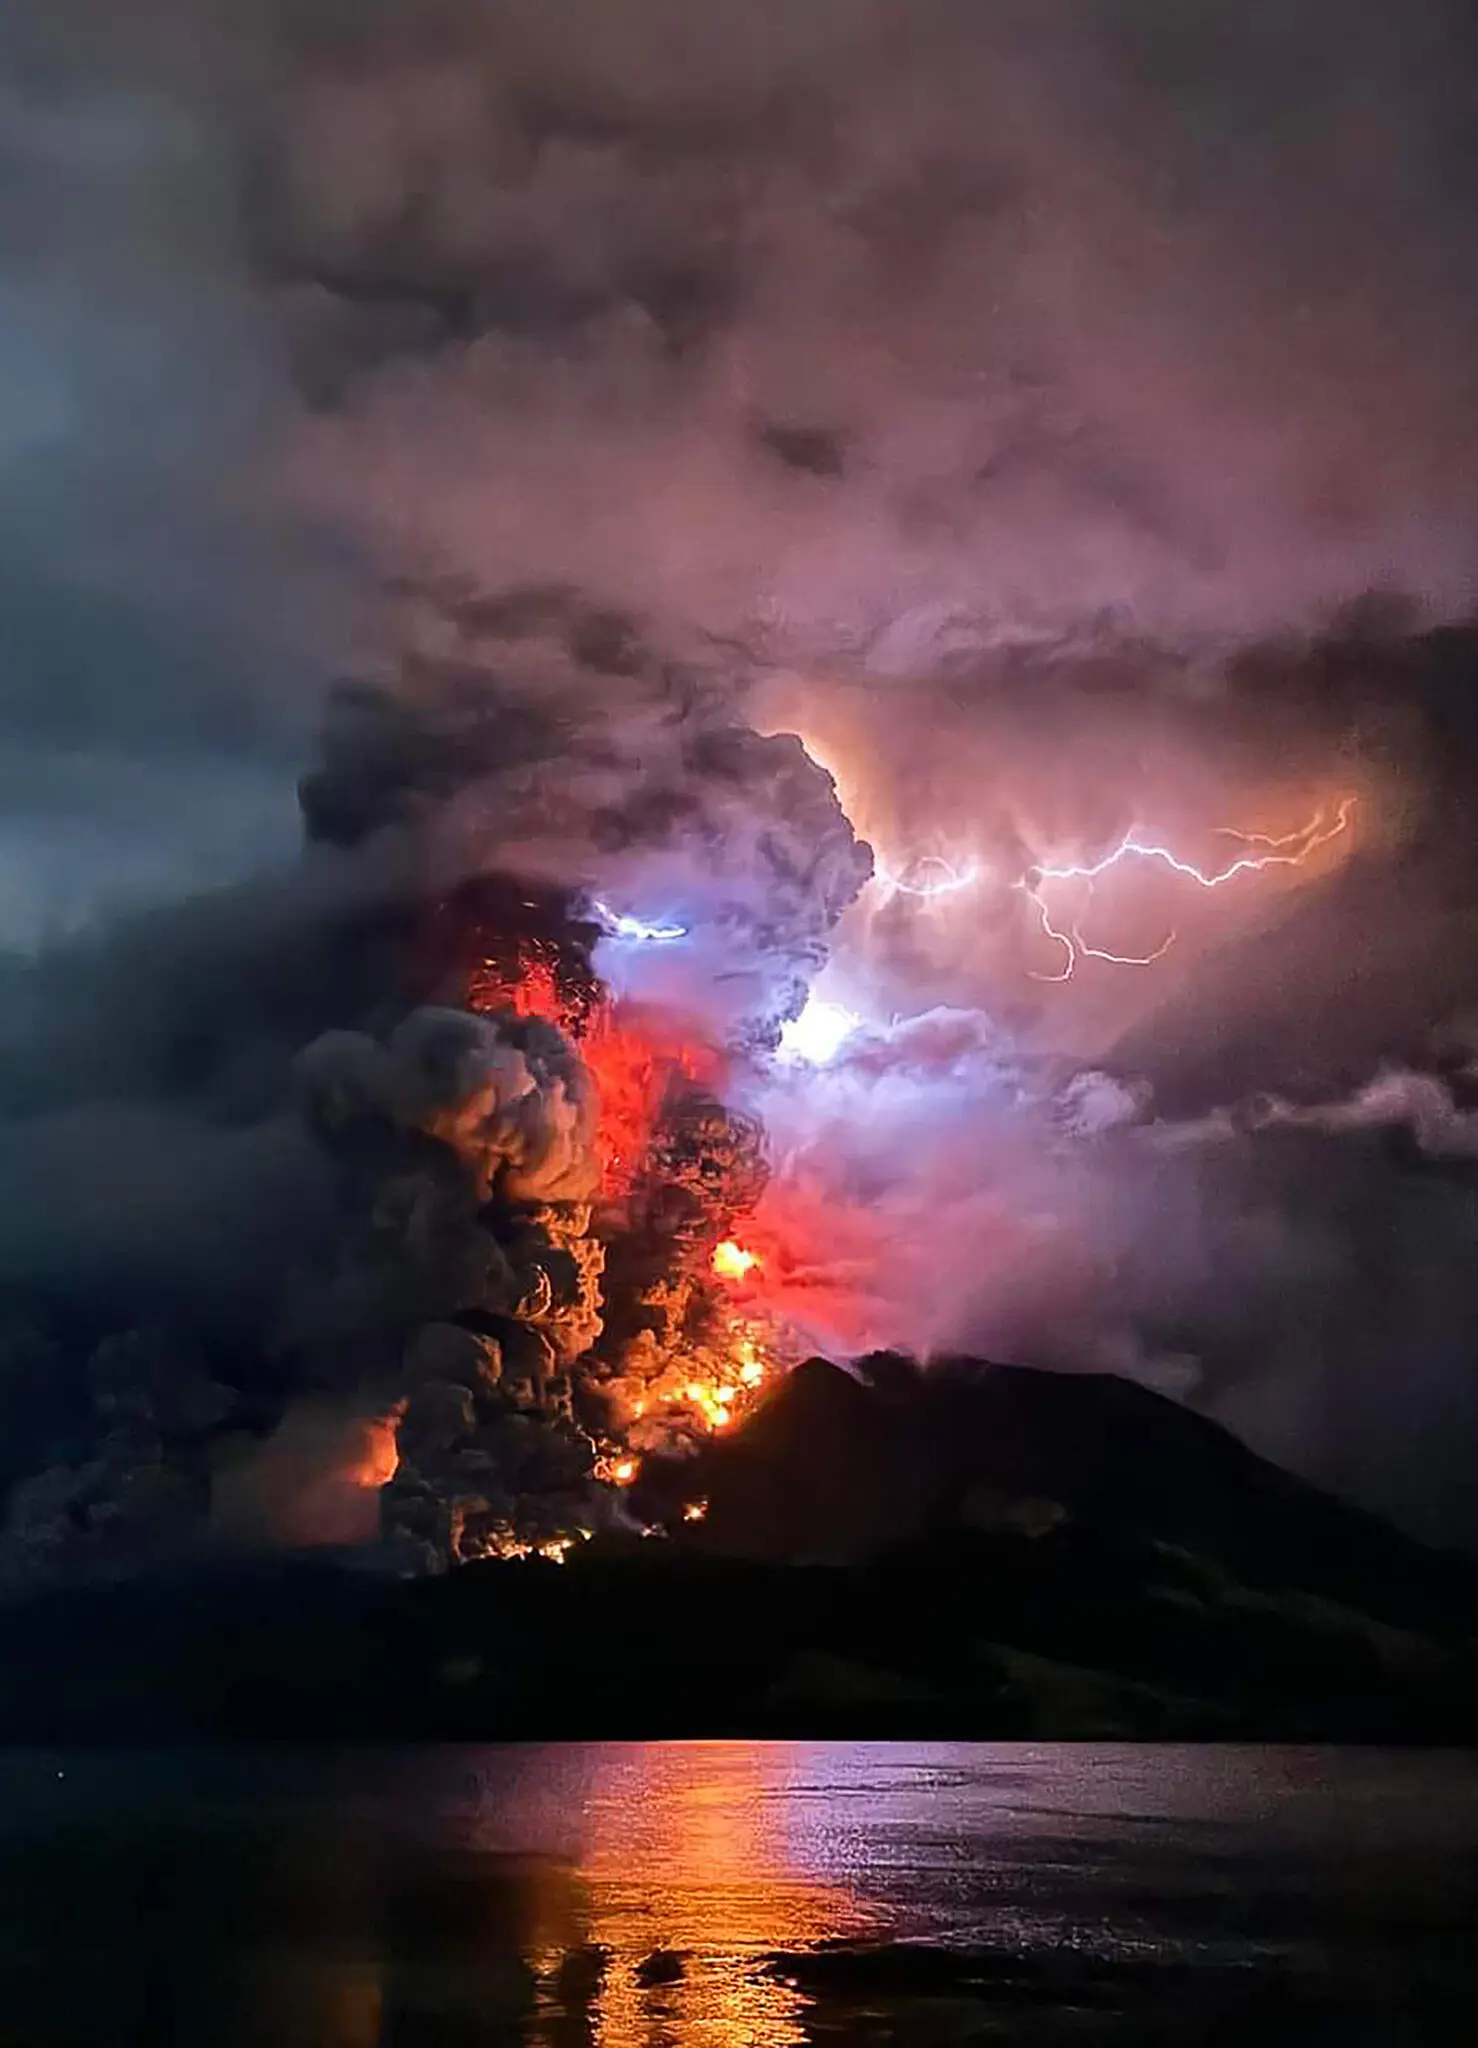 Imagem: Centro de Vulcanologia e Mitigação de Riscos Geológicos/AFP via Getty Images